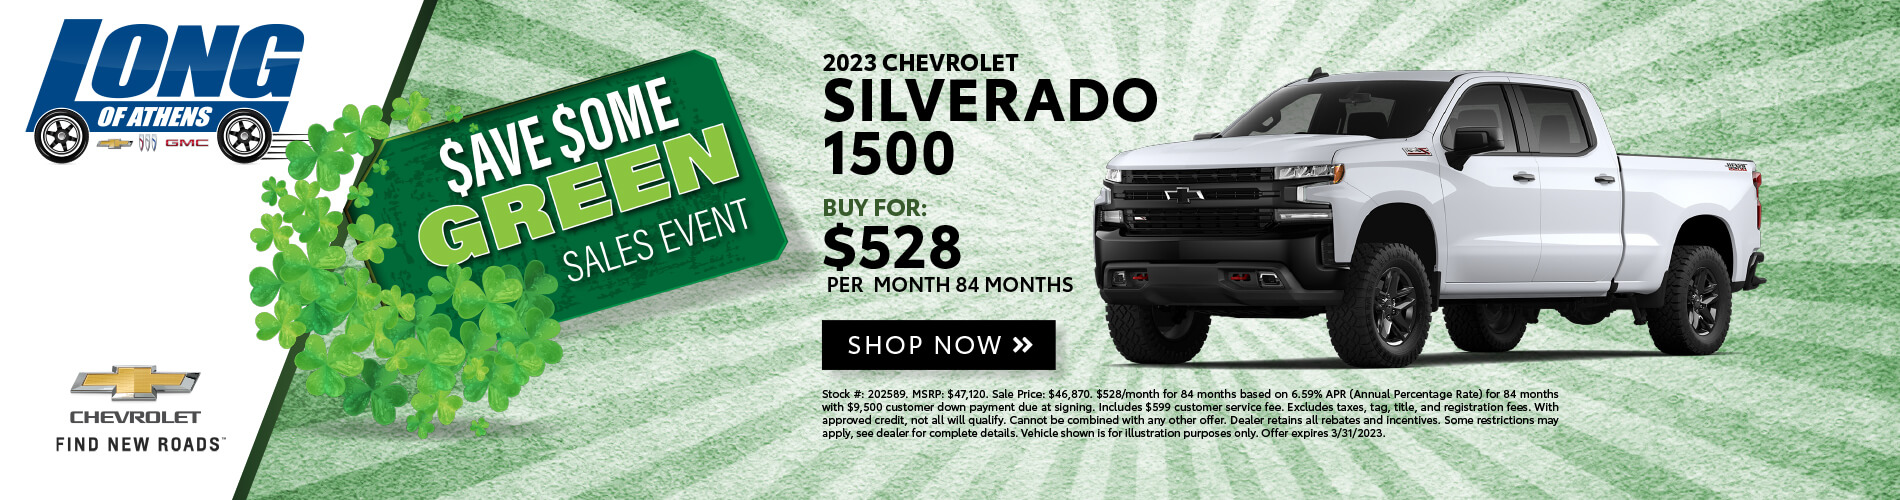 2023 Chevy Silverado 1500